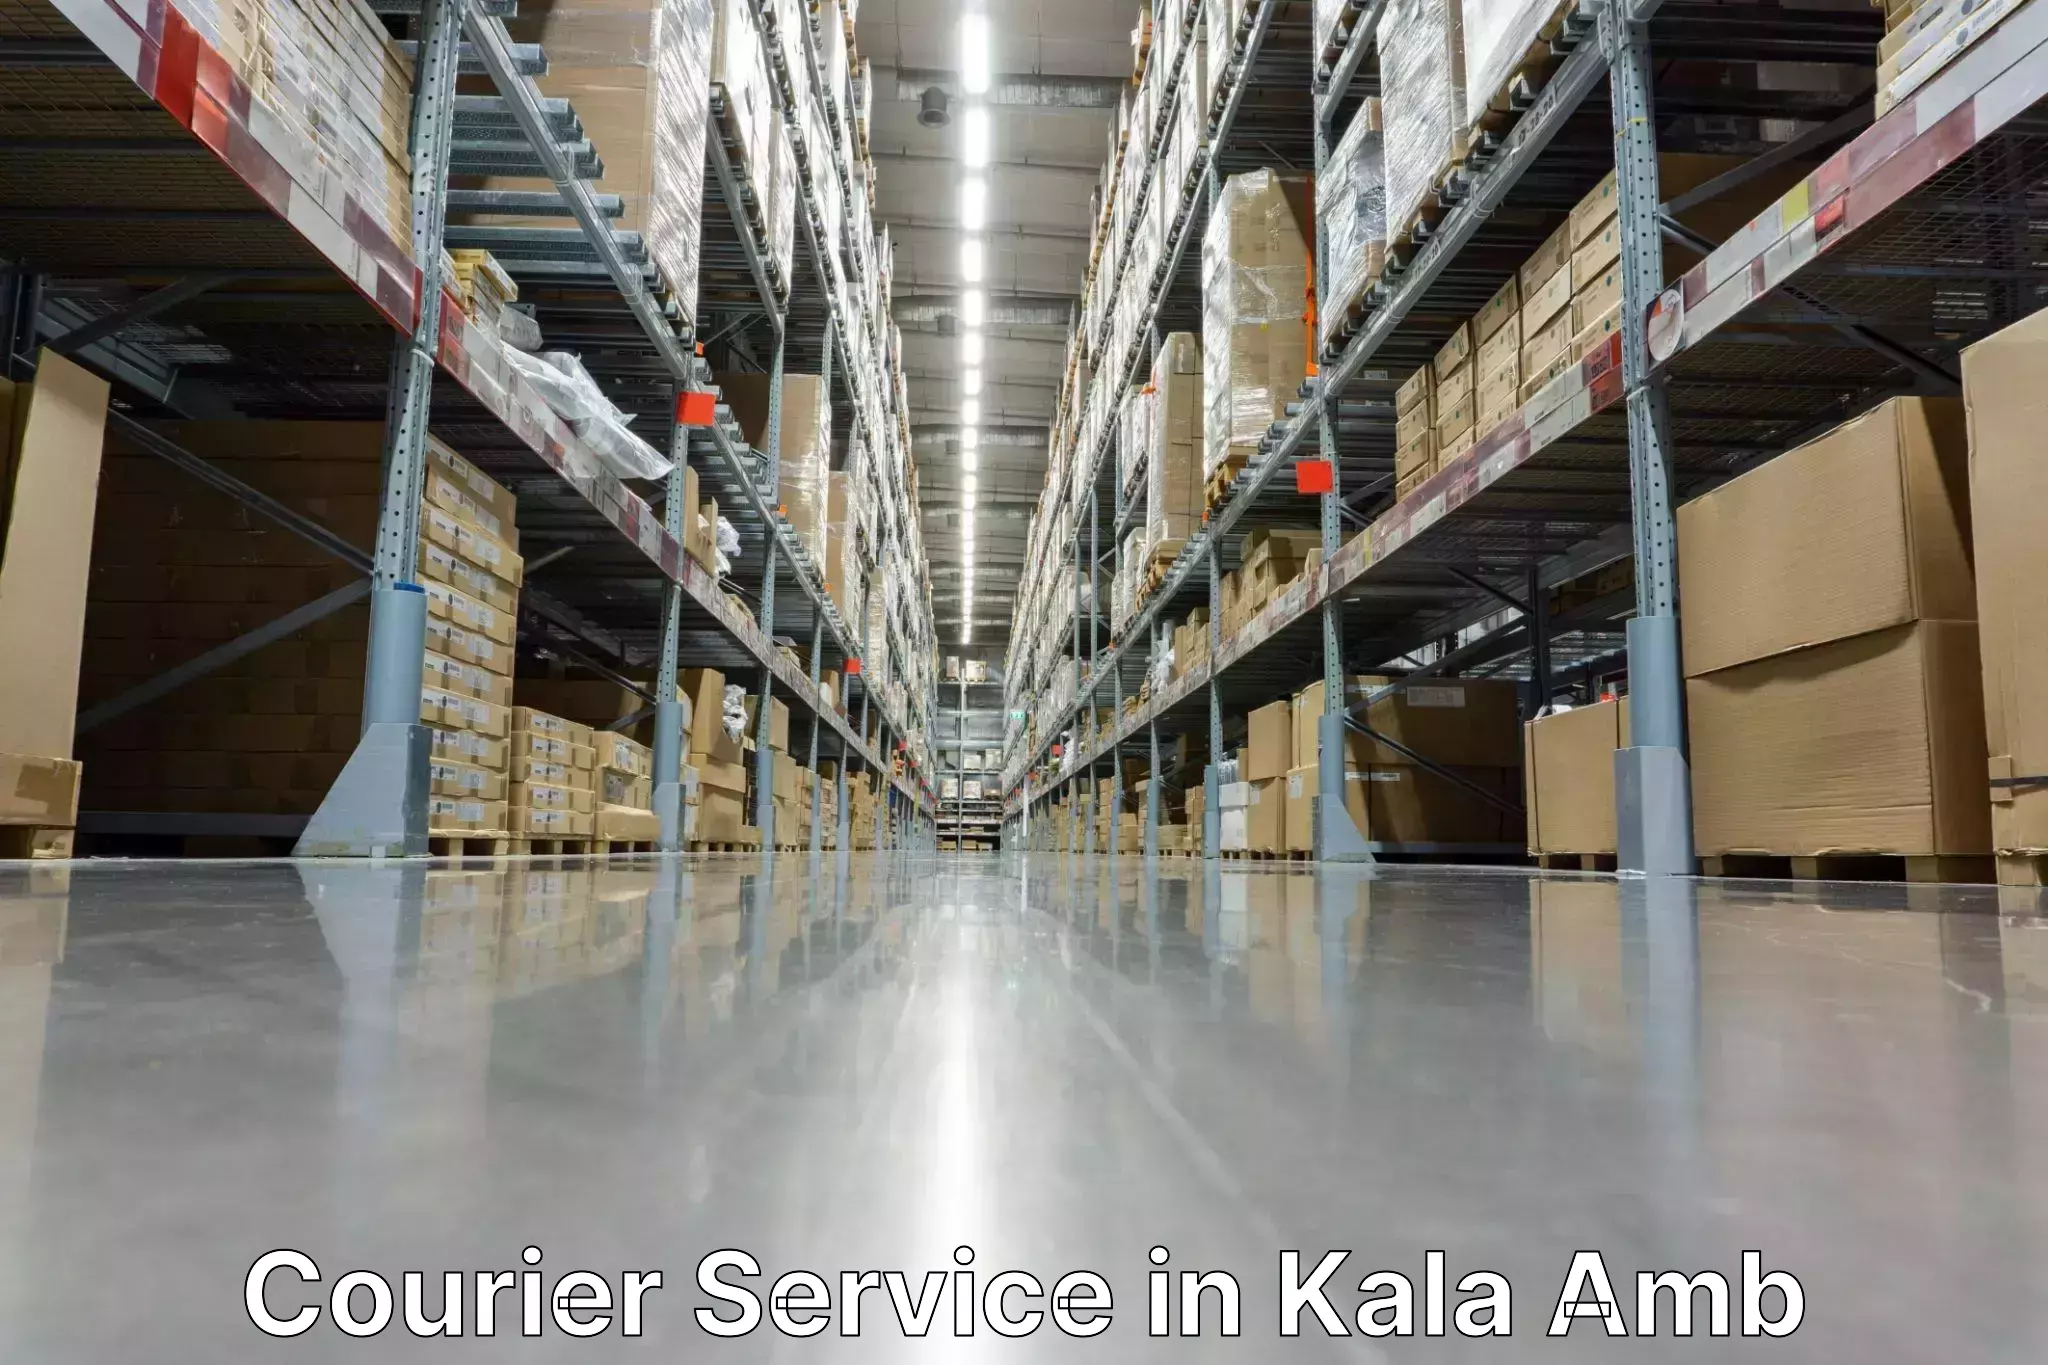 Logistics solutions in Kala Amb